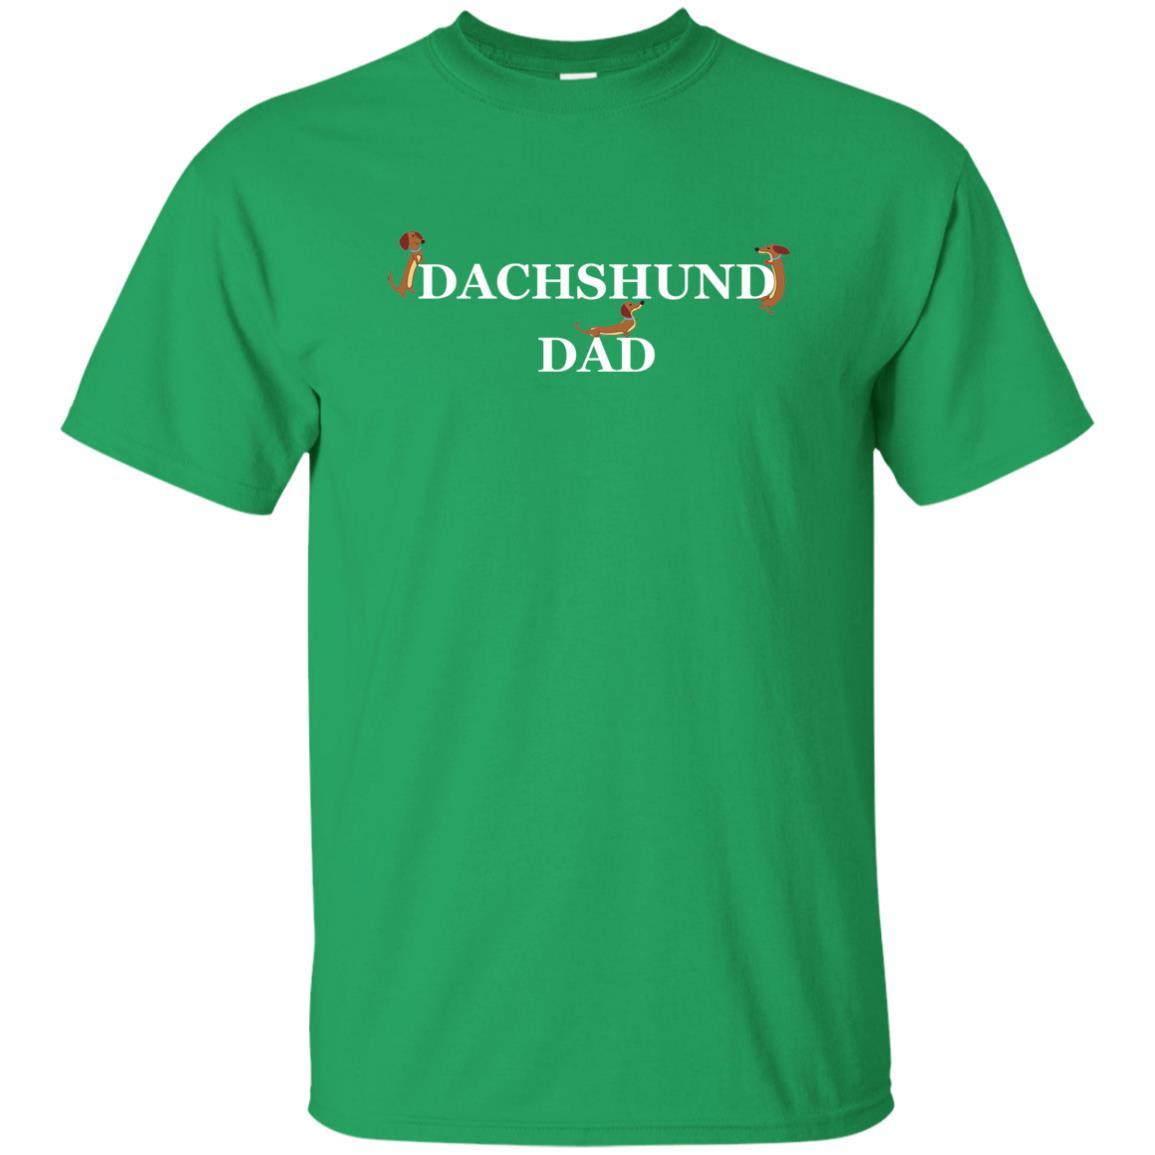 Dachshund Brown Dad Dark Shirts